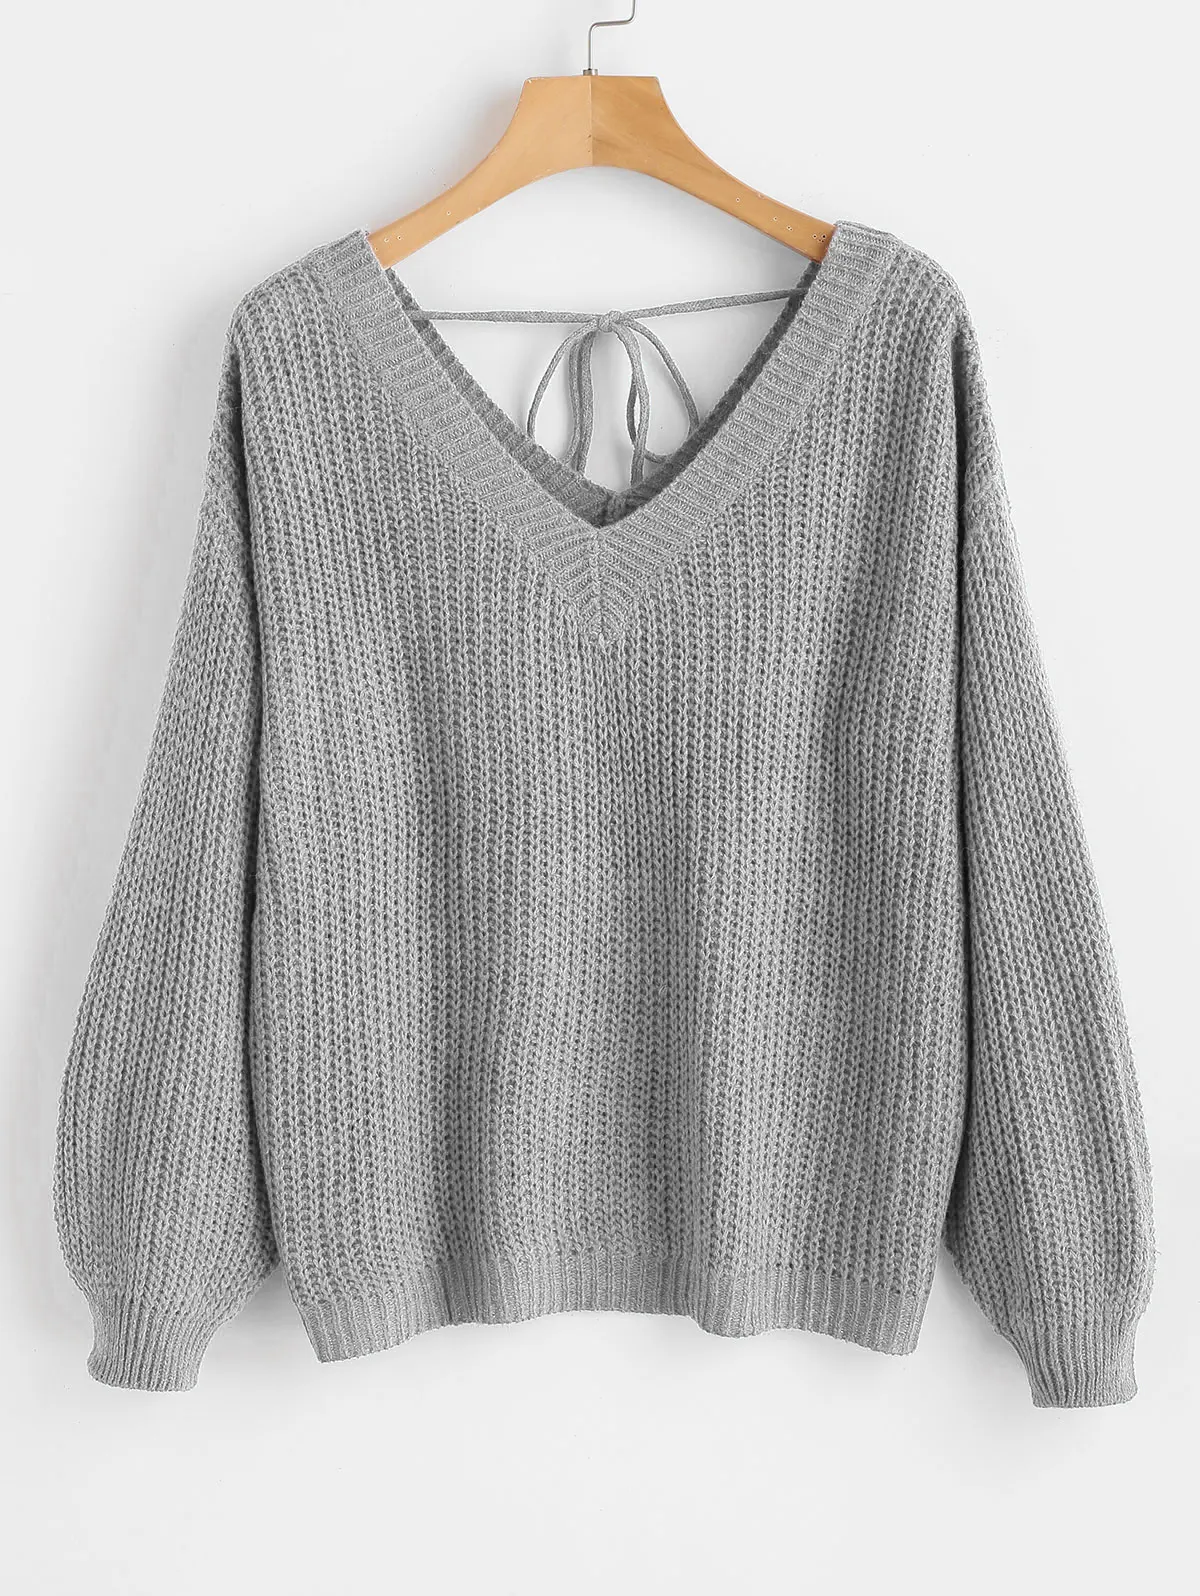 ZAFUL, высокое качество, толстый теплый женский свитер, модный вязаный мягкий свитер, джемпер, осень, v-образный вырез, топ с заниженным плечом, Женский пуловер - Цвет: Light Gray